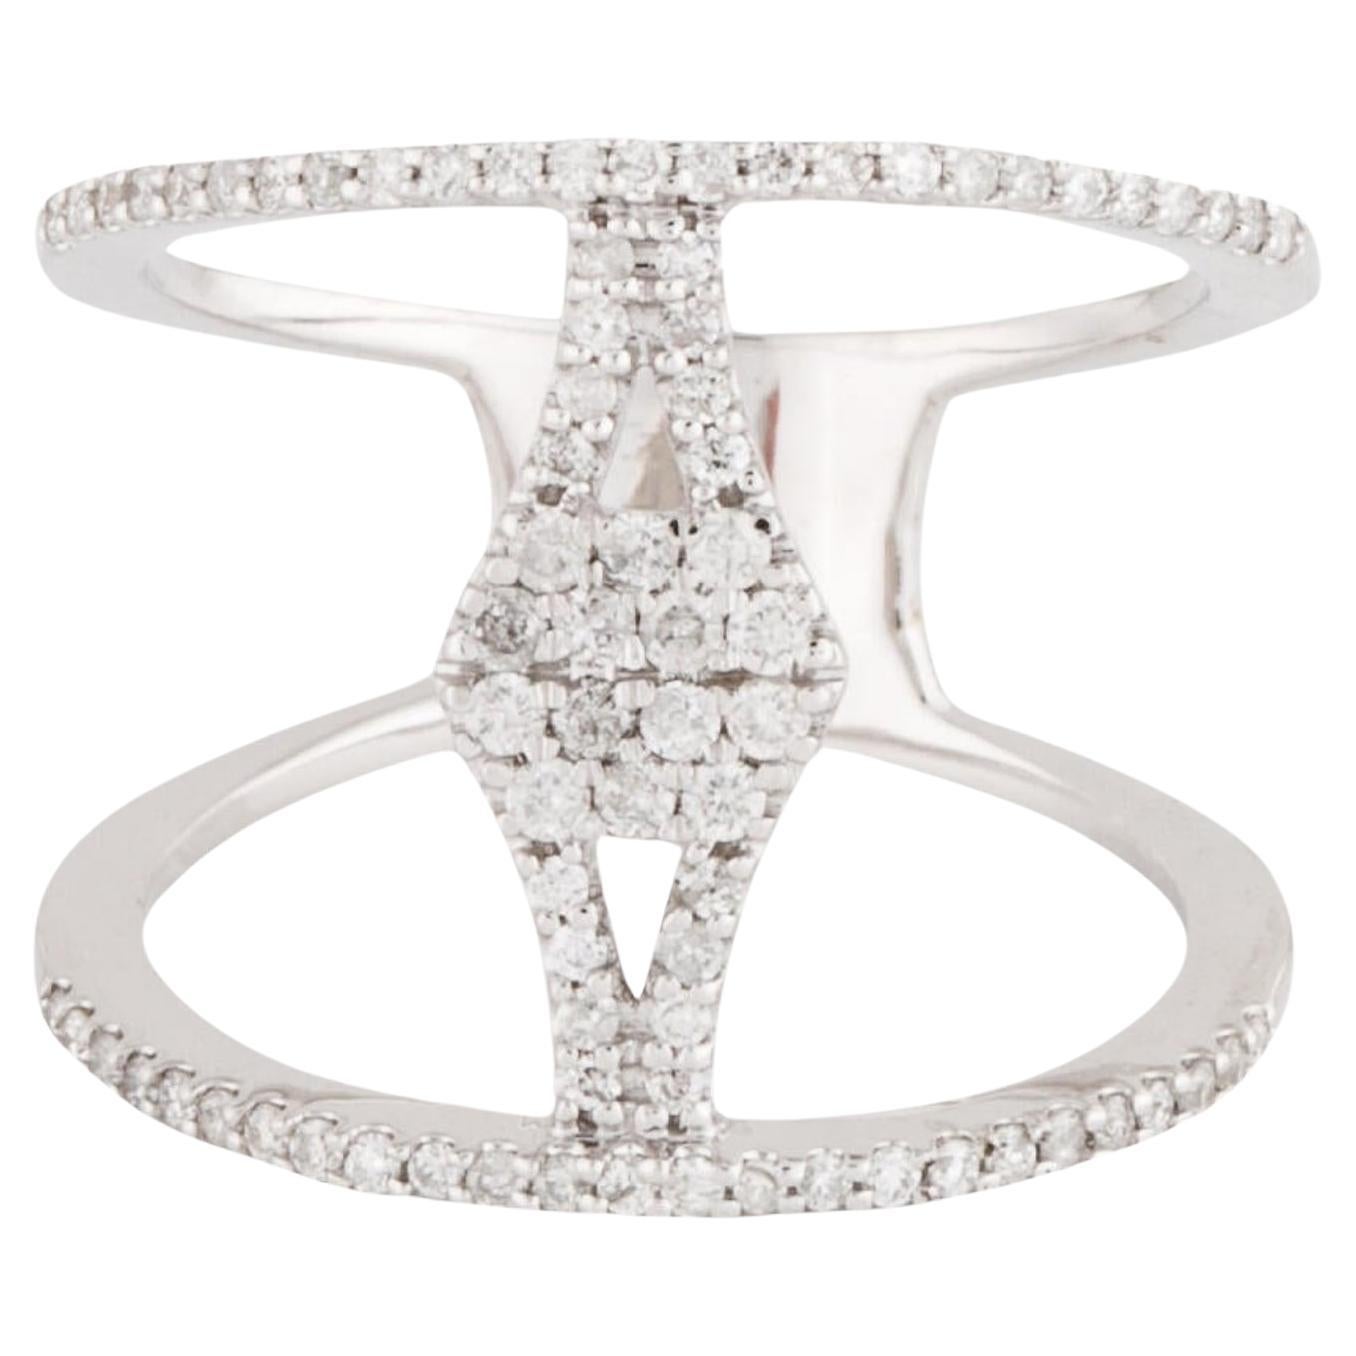 Chic 14K Diamond Fashion Band Ring - Größe 6: Timeless Glamour & Sparkle - Luxus im Angebot